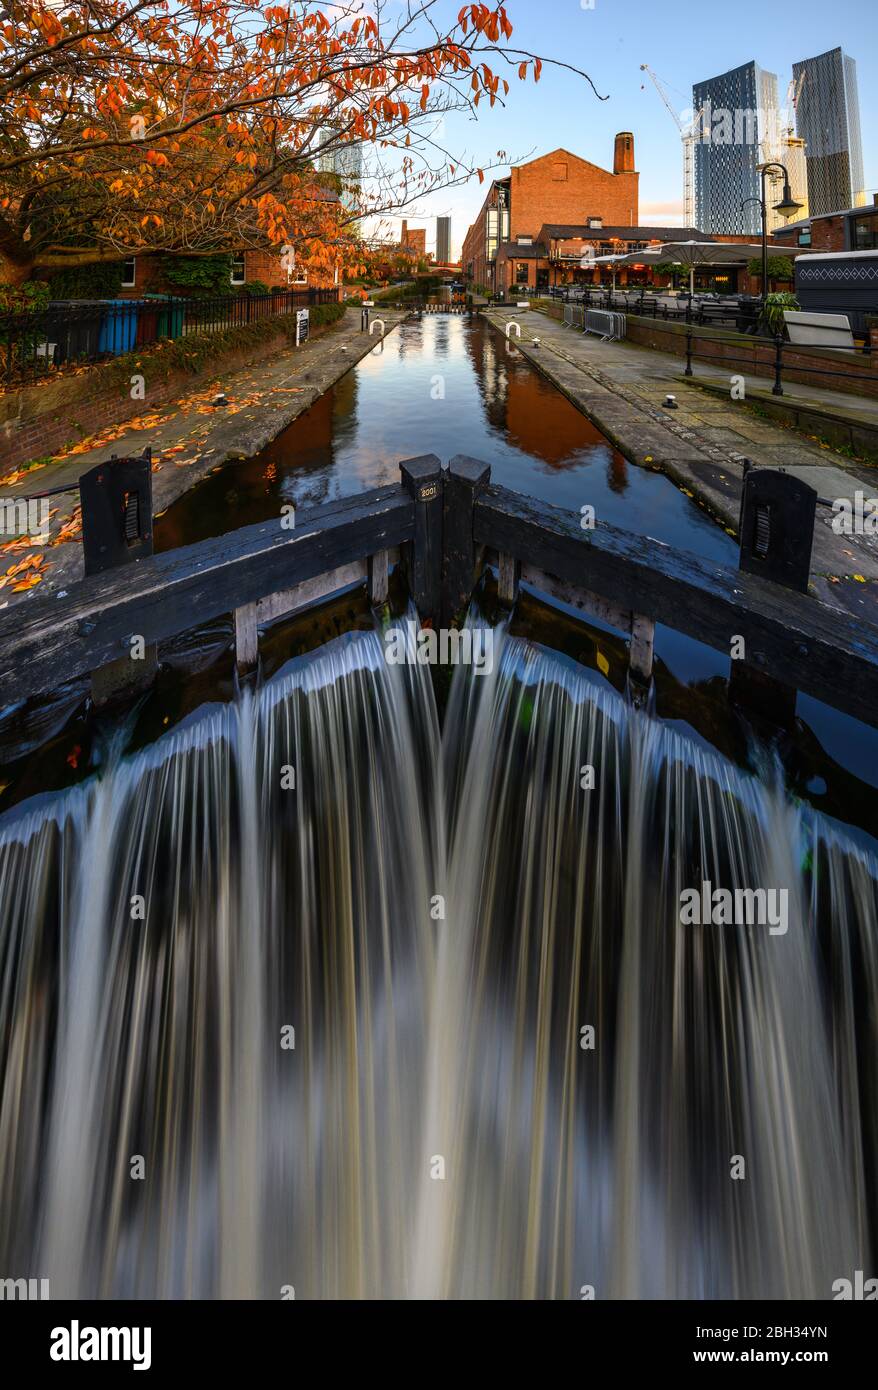 Puente del canal de agua en un área de conservación de la ciudad interior, Manchester, Inglaterra, Reino Unido Foto de stock